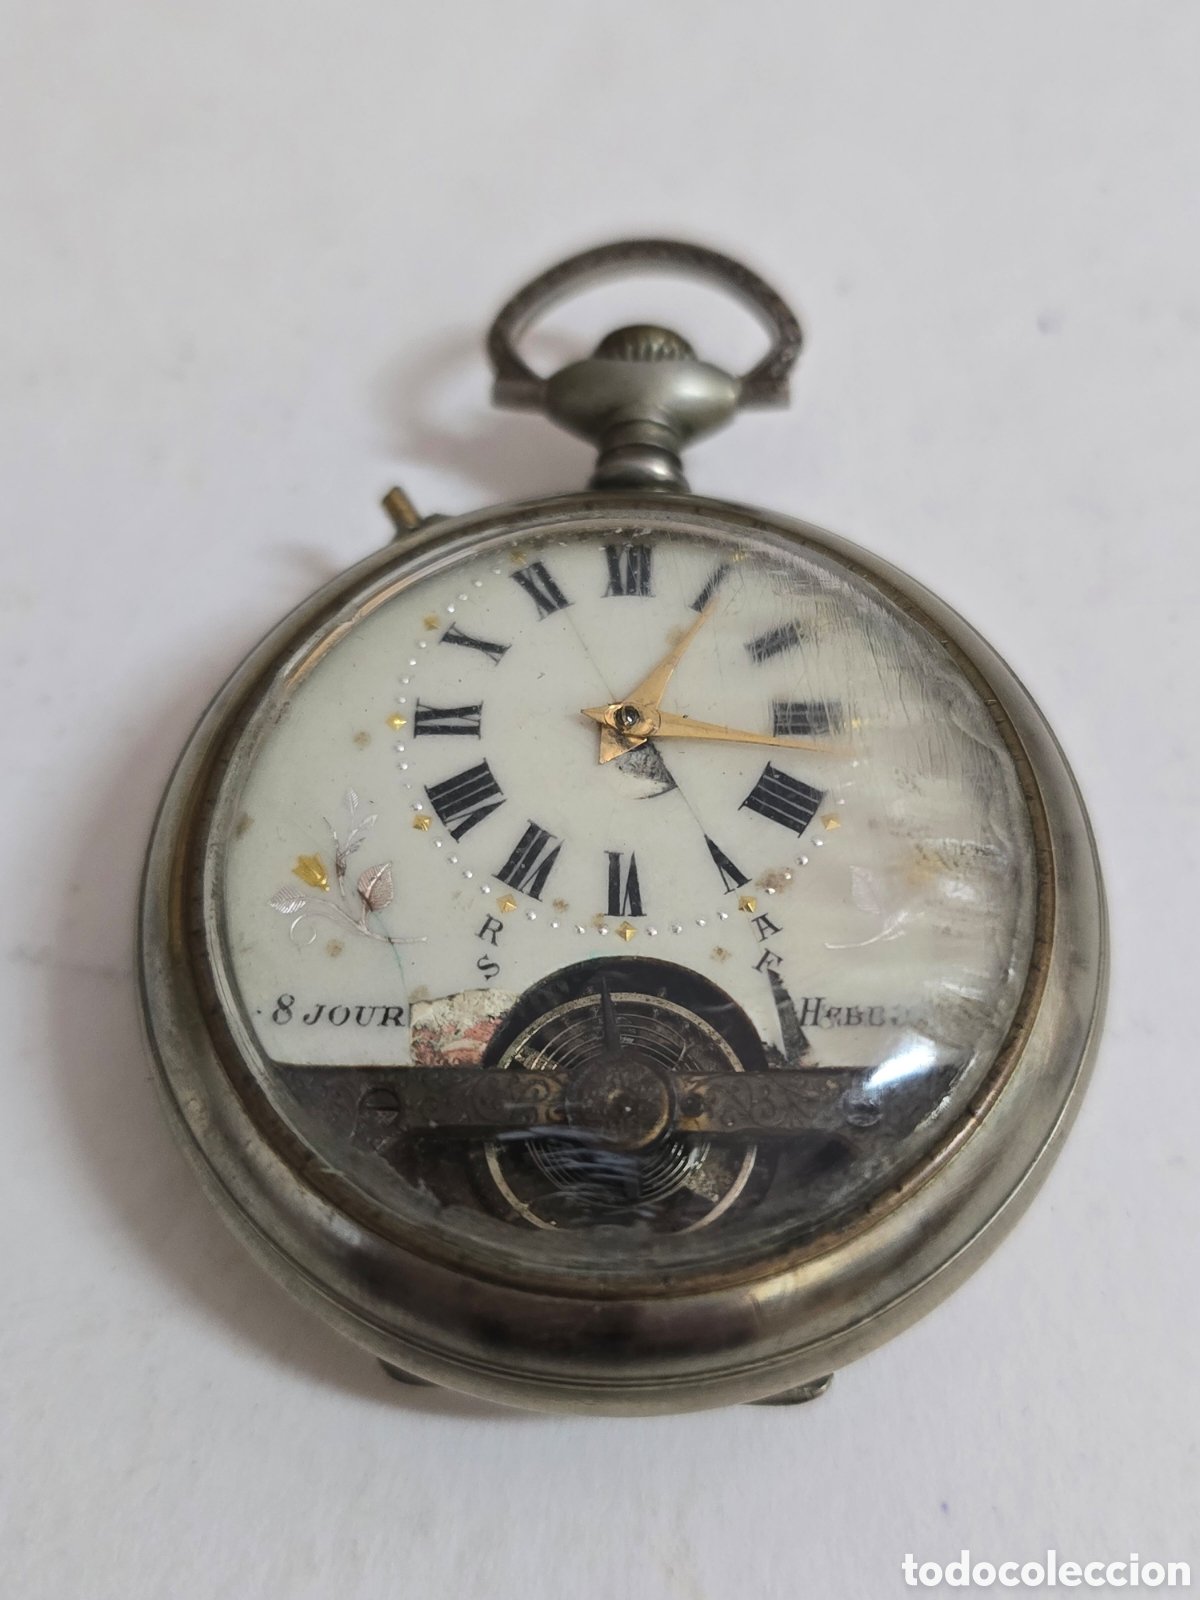 antiguo reloj de fichar phuc - Compra venta en todocoleccion